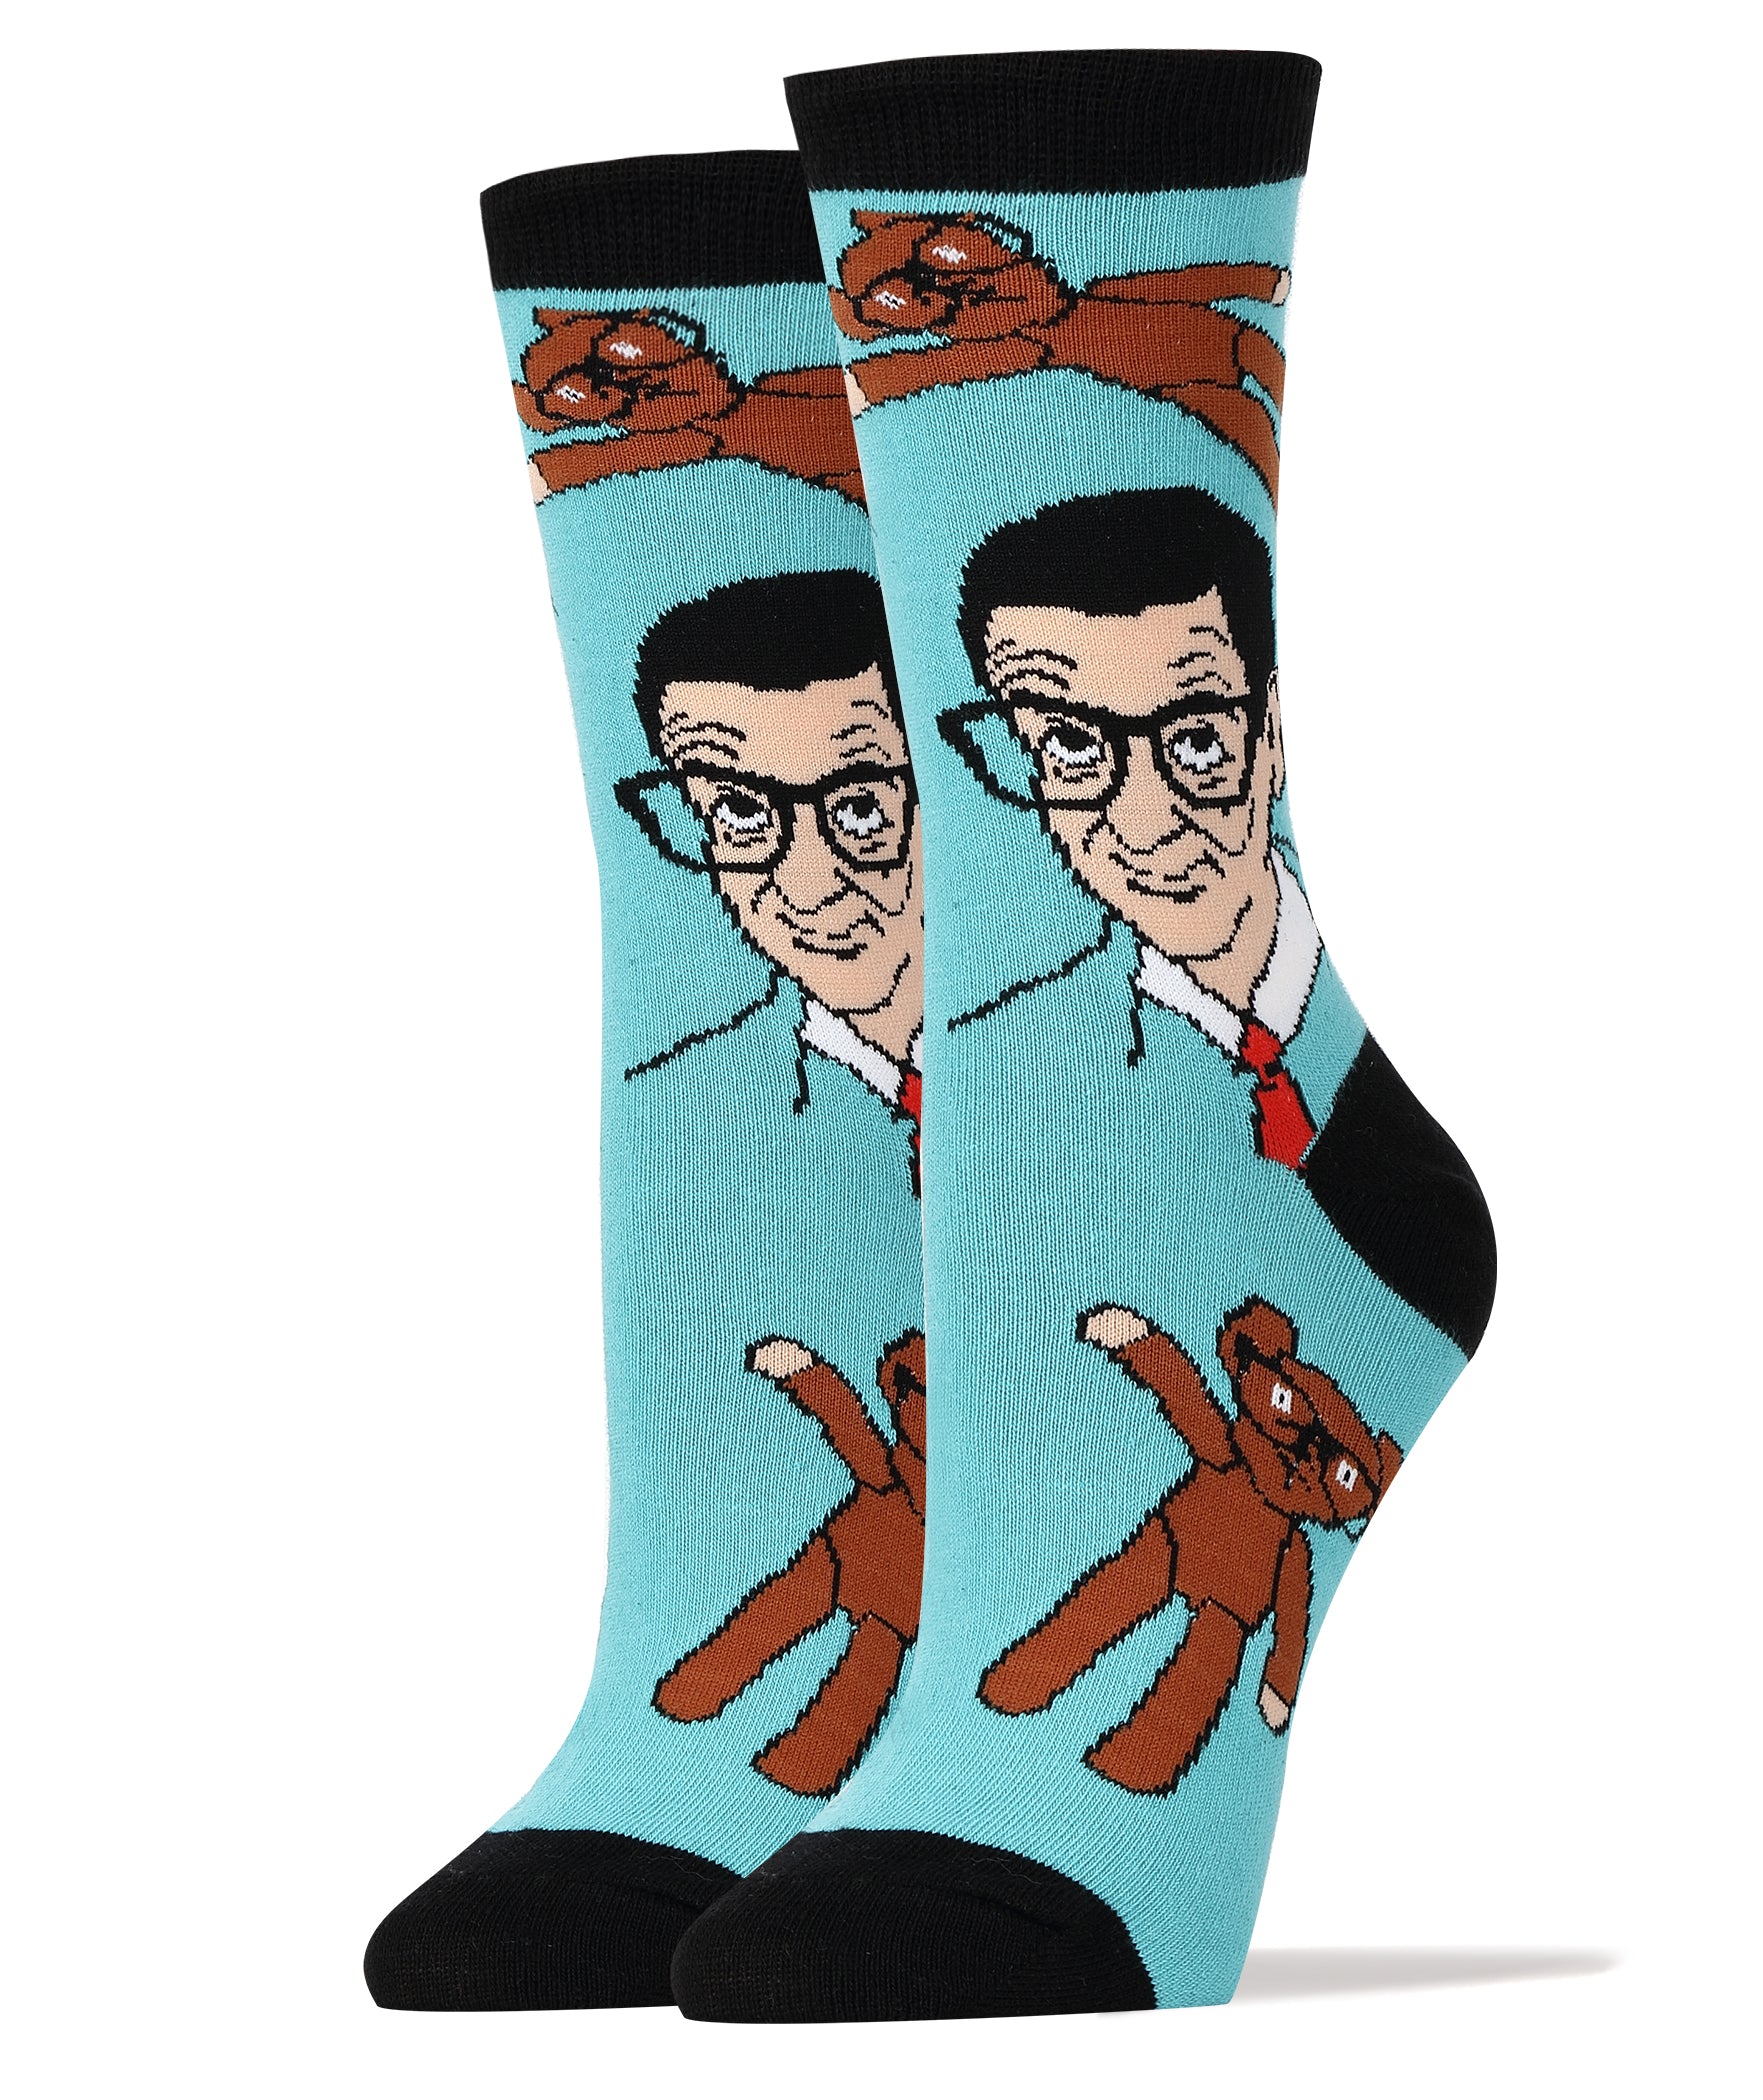 Mr Bean and Teddy Socks | Novelty Socks For Women